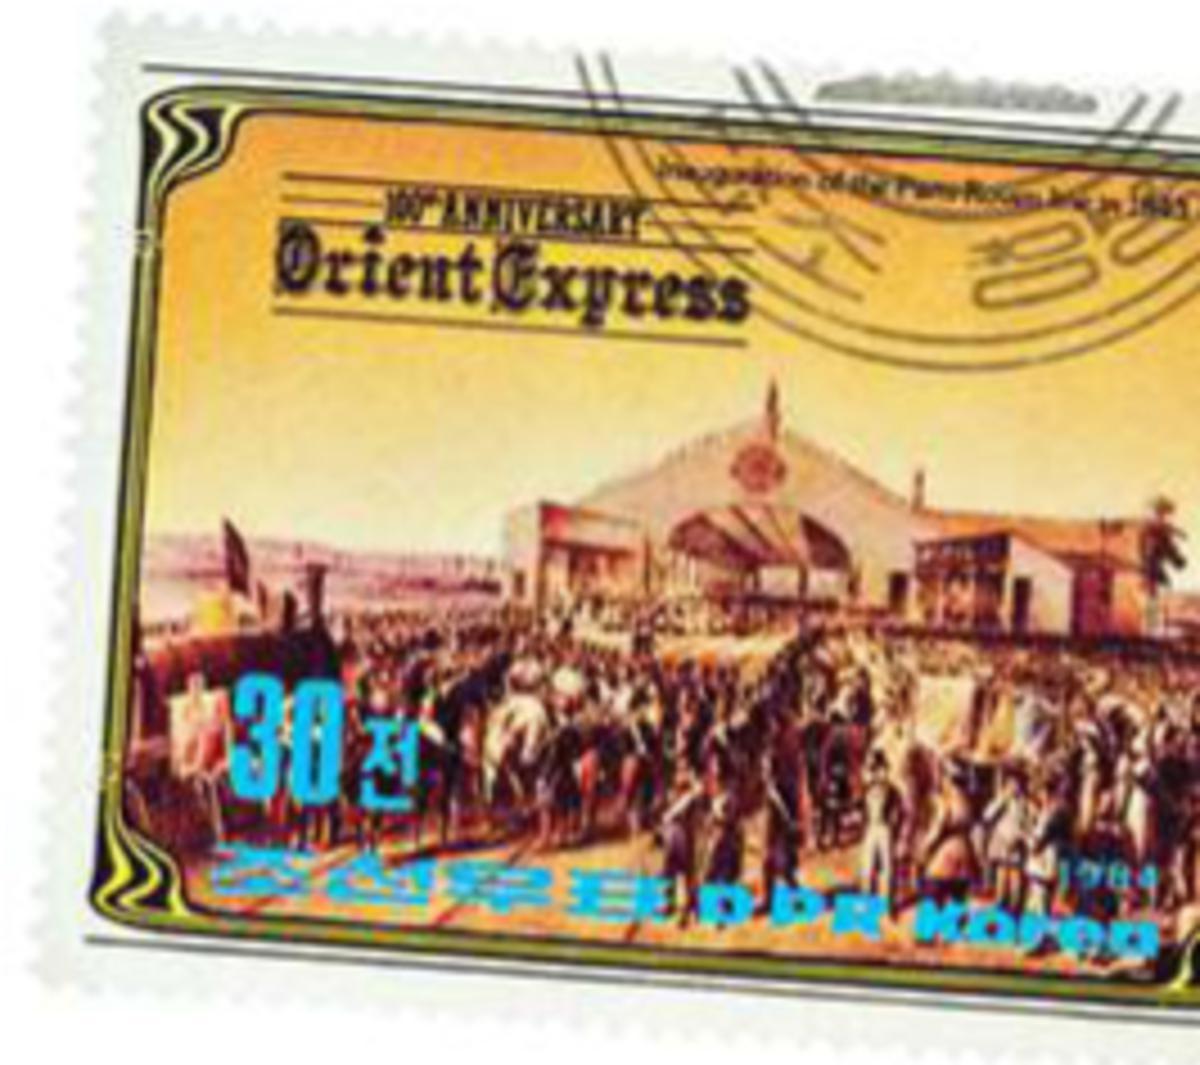 En 1984, la Corée du Nord a émis un timbre pour célébrer le 100e anniversaire de l'Orient-Express. Ici, l'inauguration de la ligne de chemin de fer Paris-Roven en 1843.